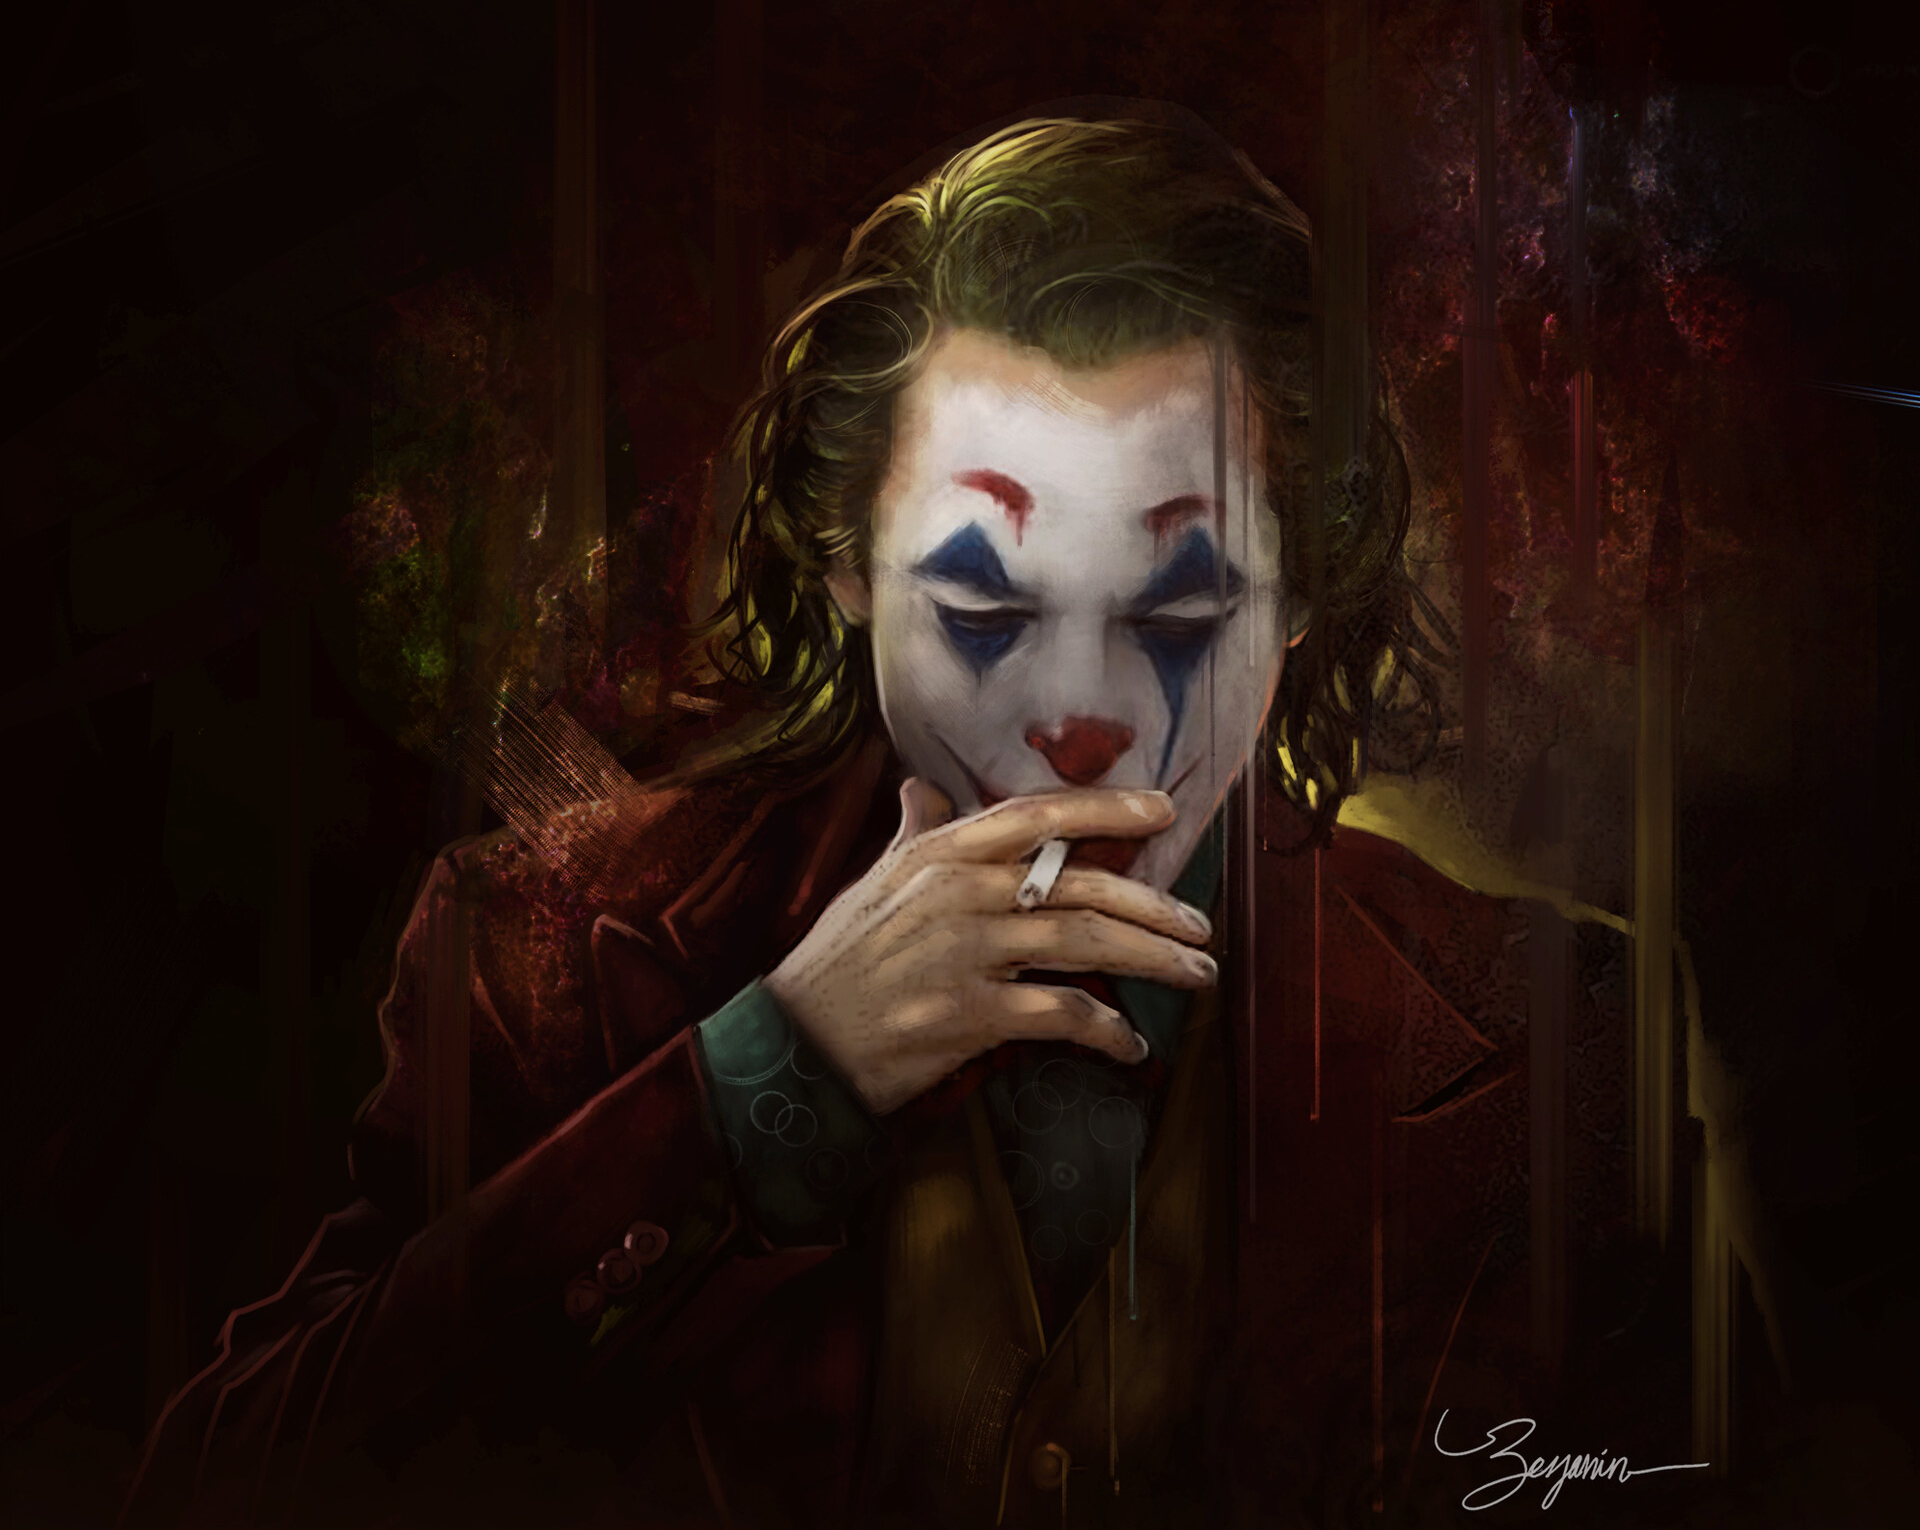 The Joker Smoking a Cigarette HD Wallpaper. Background